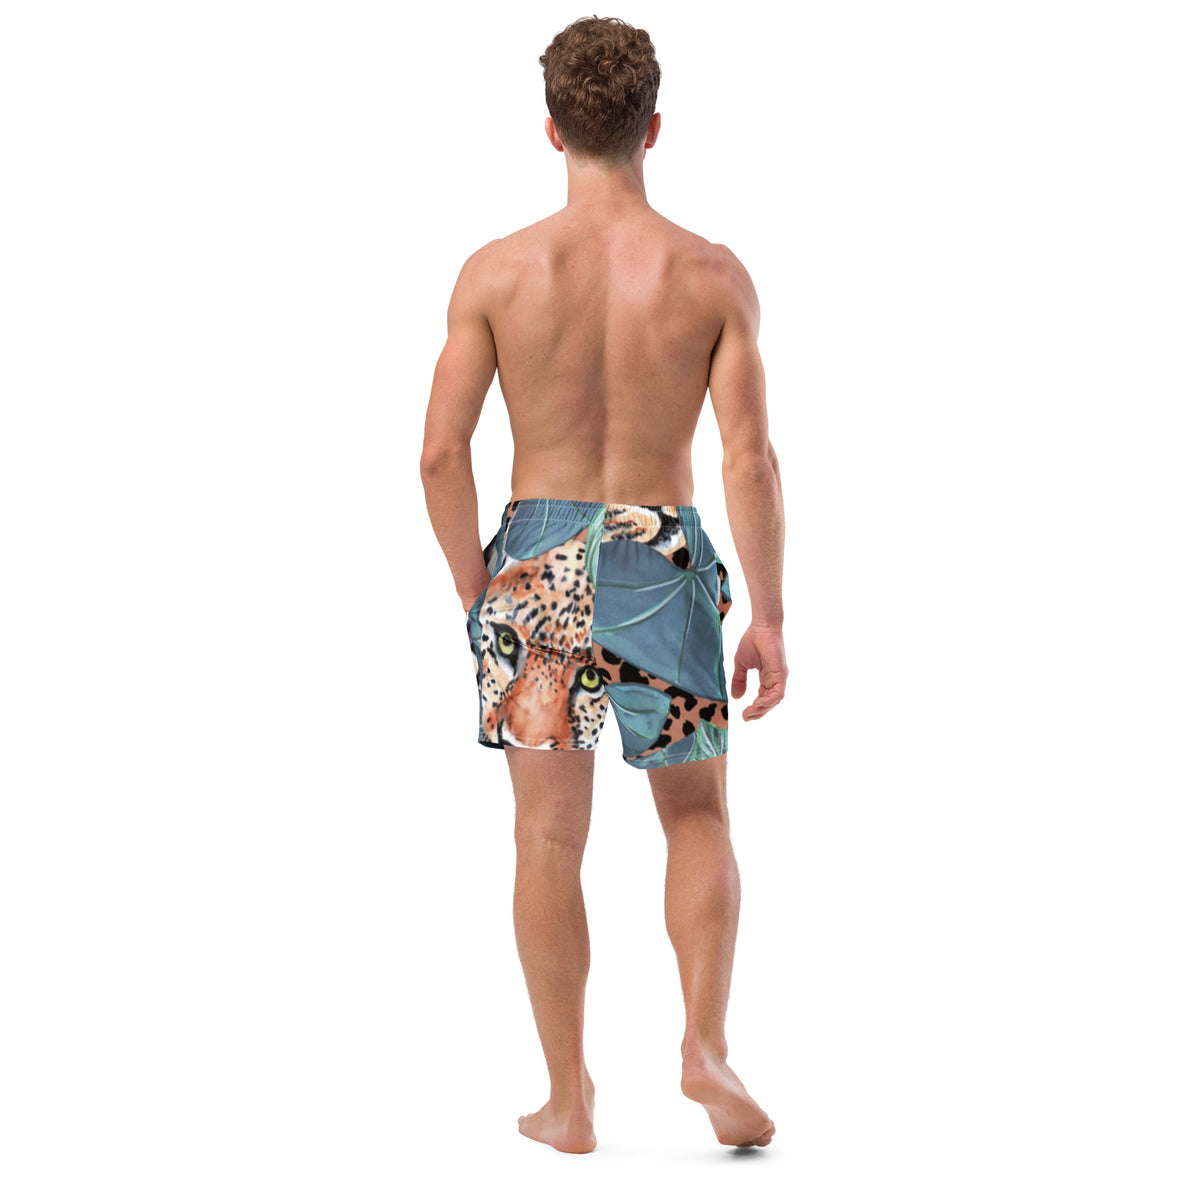 Hidden Eyes Men's swim trunks